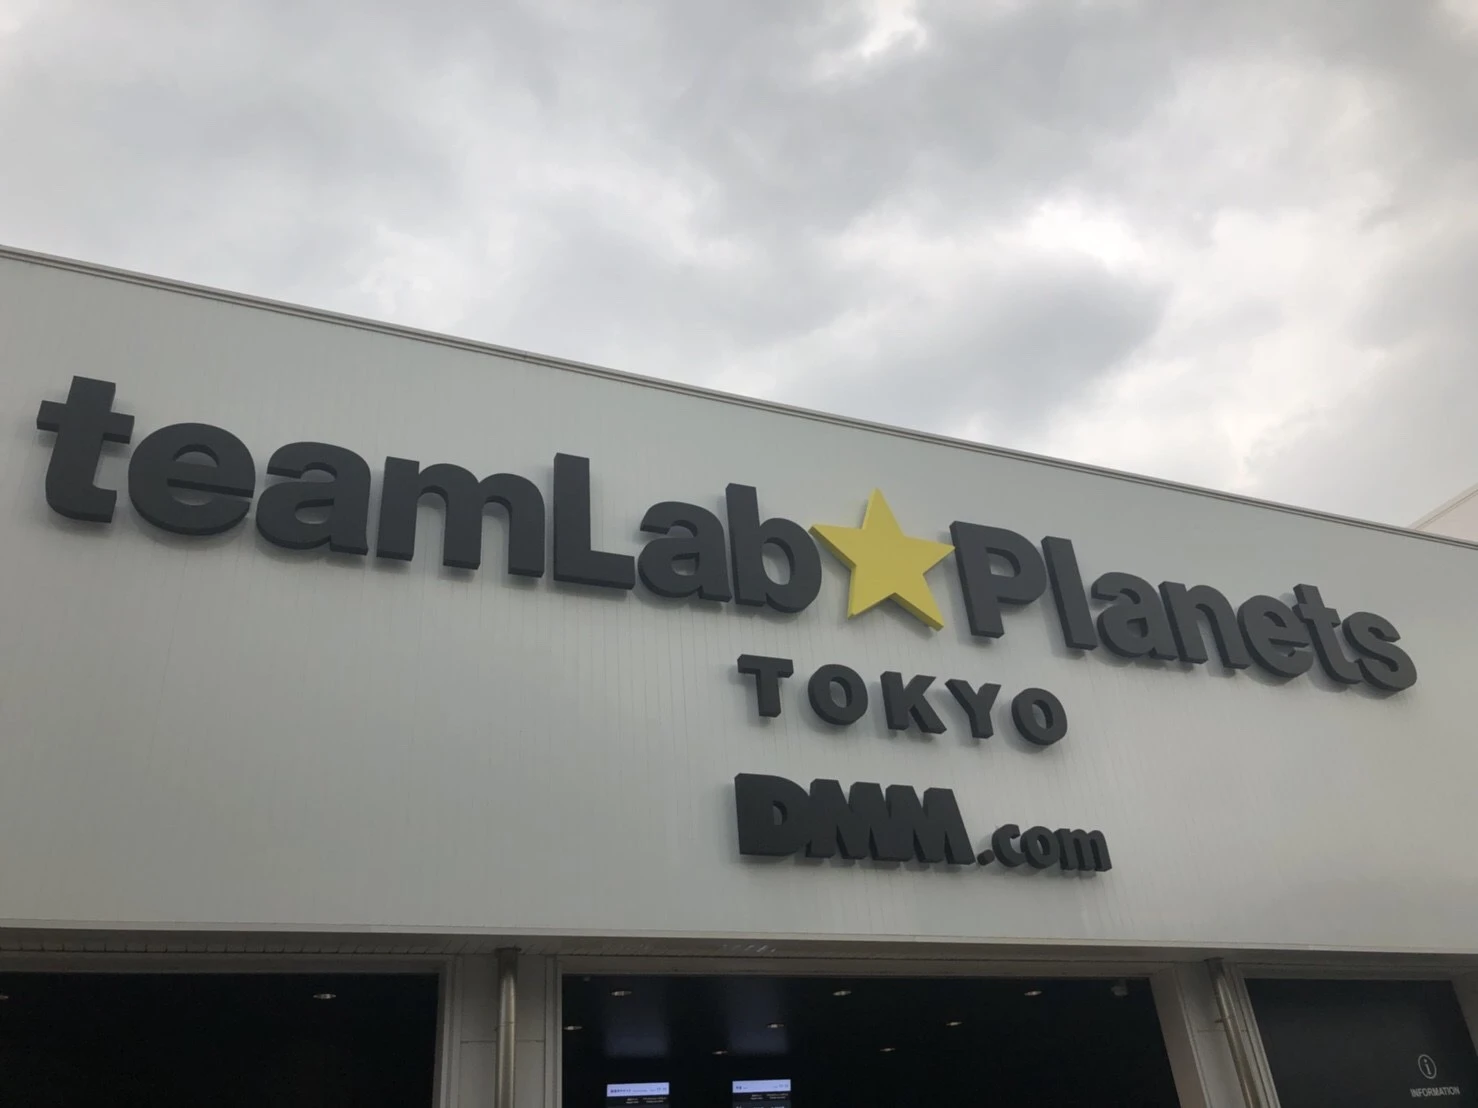 今話題のteamLab Planets TOKYO DMM.com&quot;♡_1_1